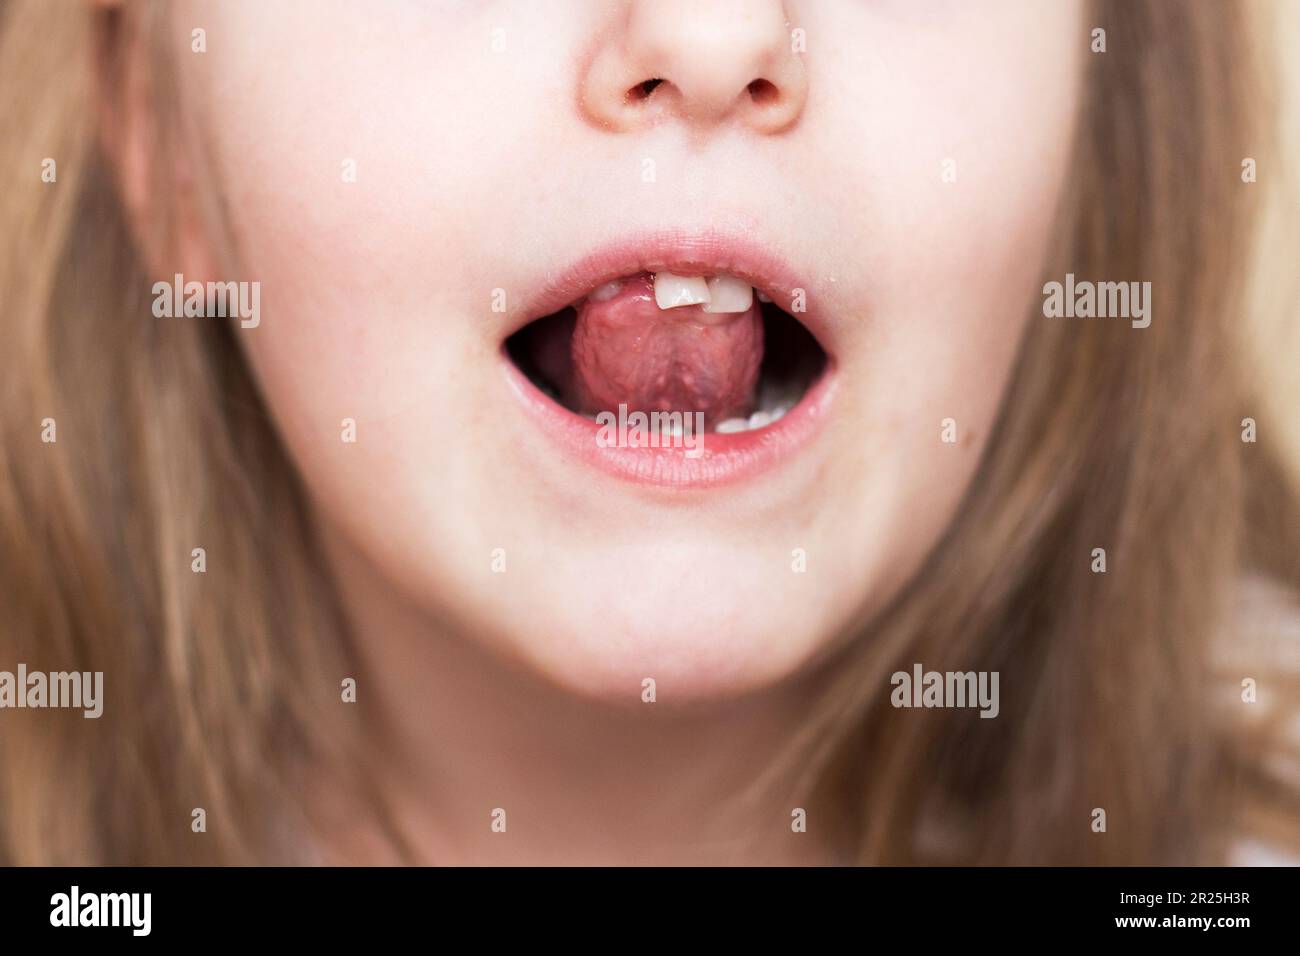 Primo piano ritratto di una ragazza sorridente bambino felice con capelli lunghi che muove il suo dente anteriore del latte con la lingua in bocca aperta. Conce di perdita dei denti del latte Foto Stock